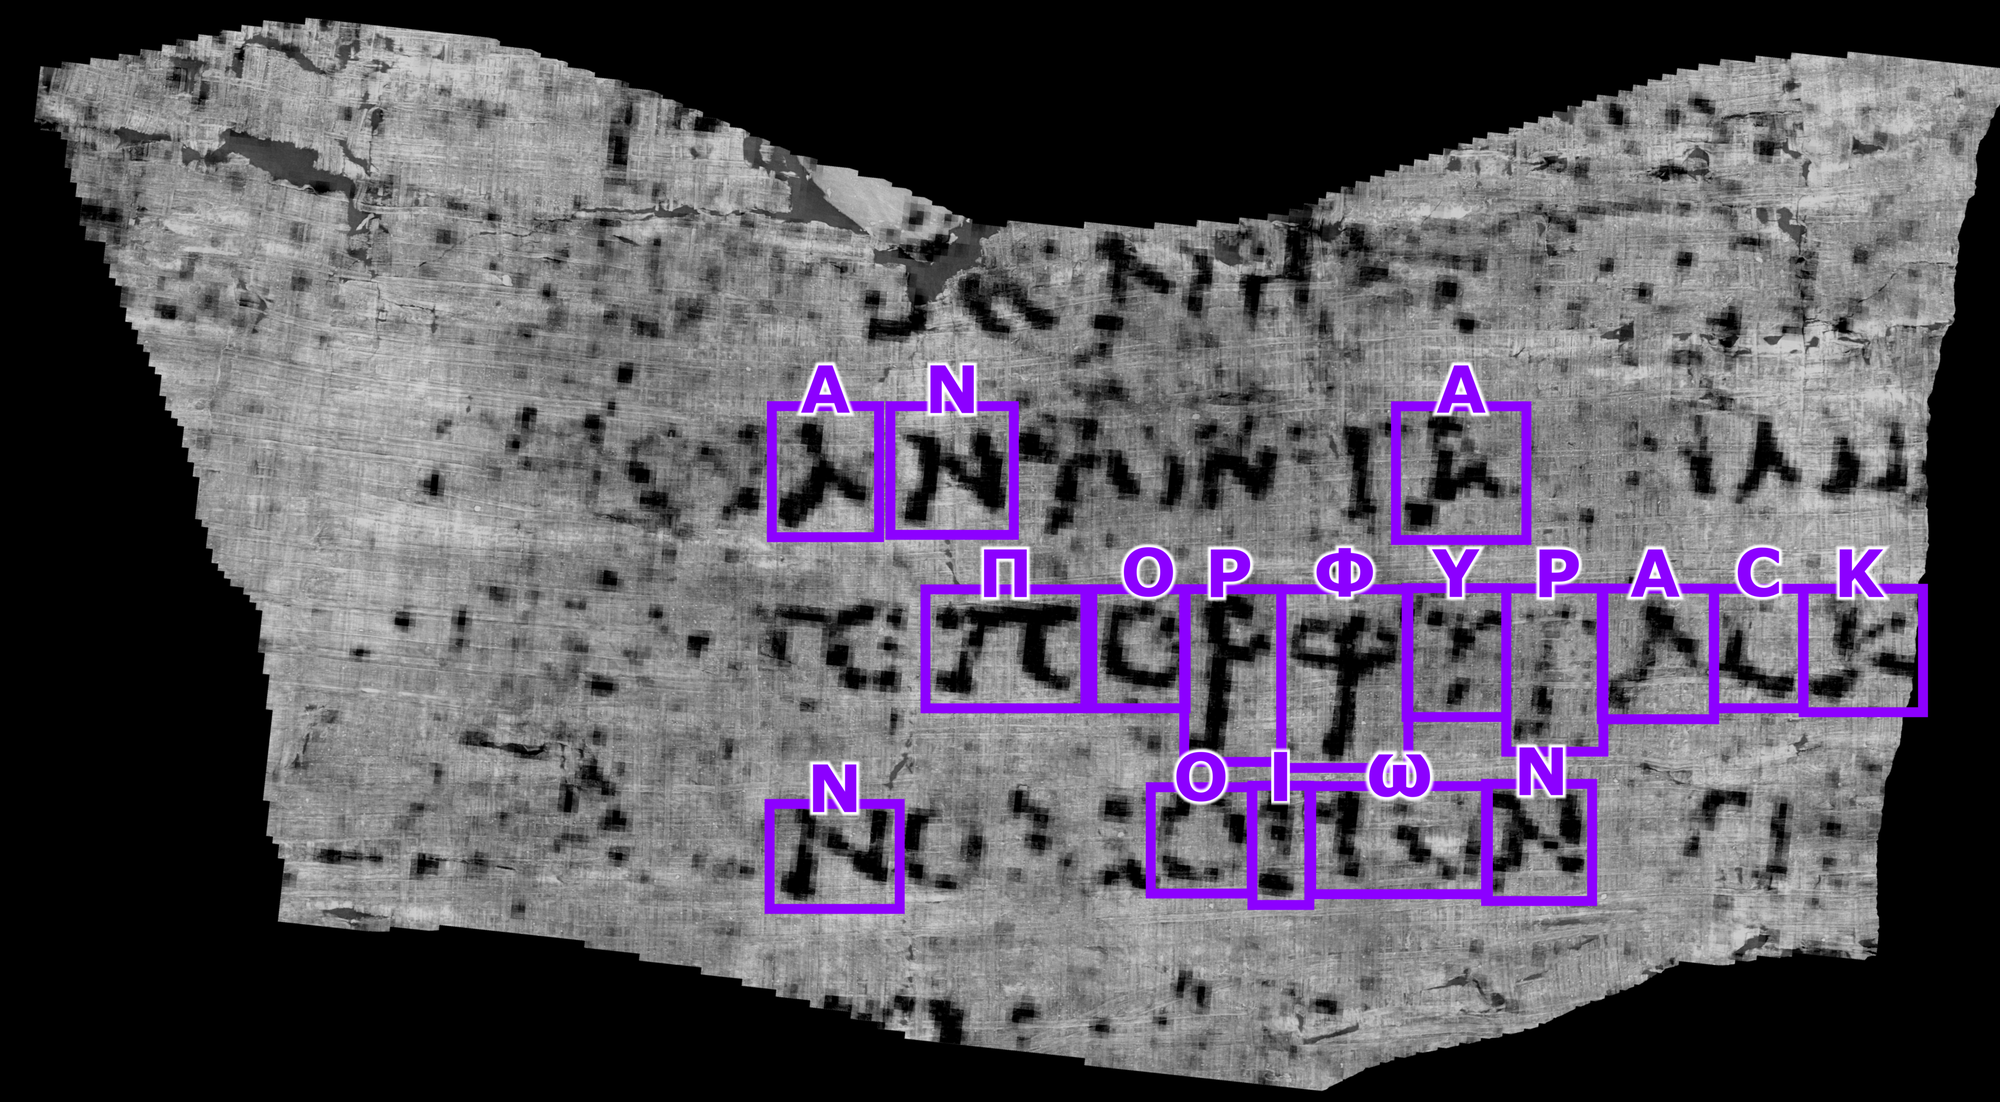 Auf dem kleinen Bereich einer verkohlten Papyrusrolle identifizierten die Fachleute mehrere griechische Buchstaben und das Wort »purpurfarben«.